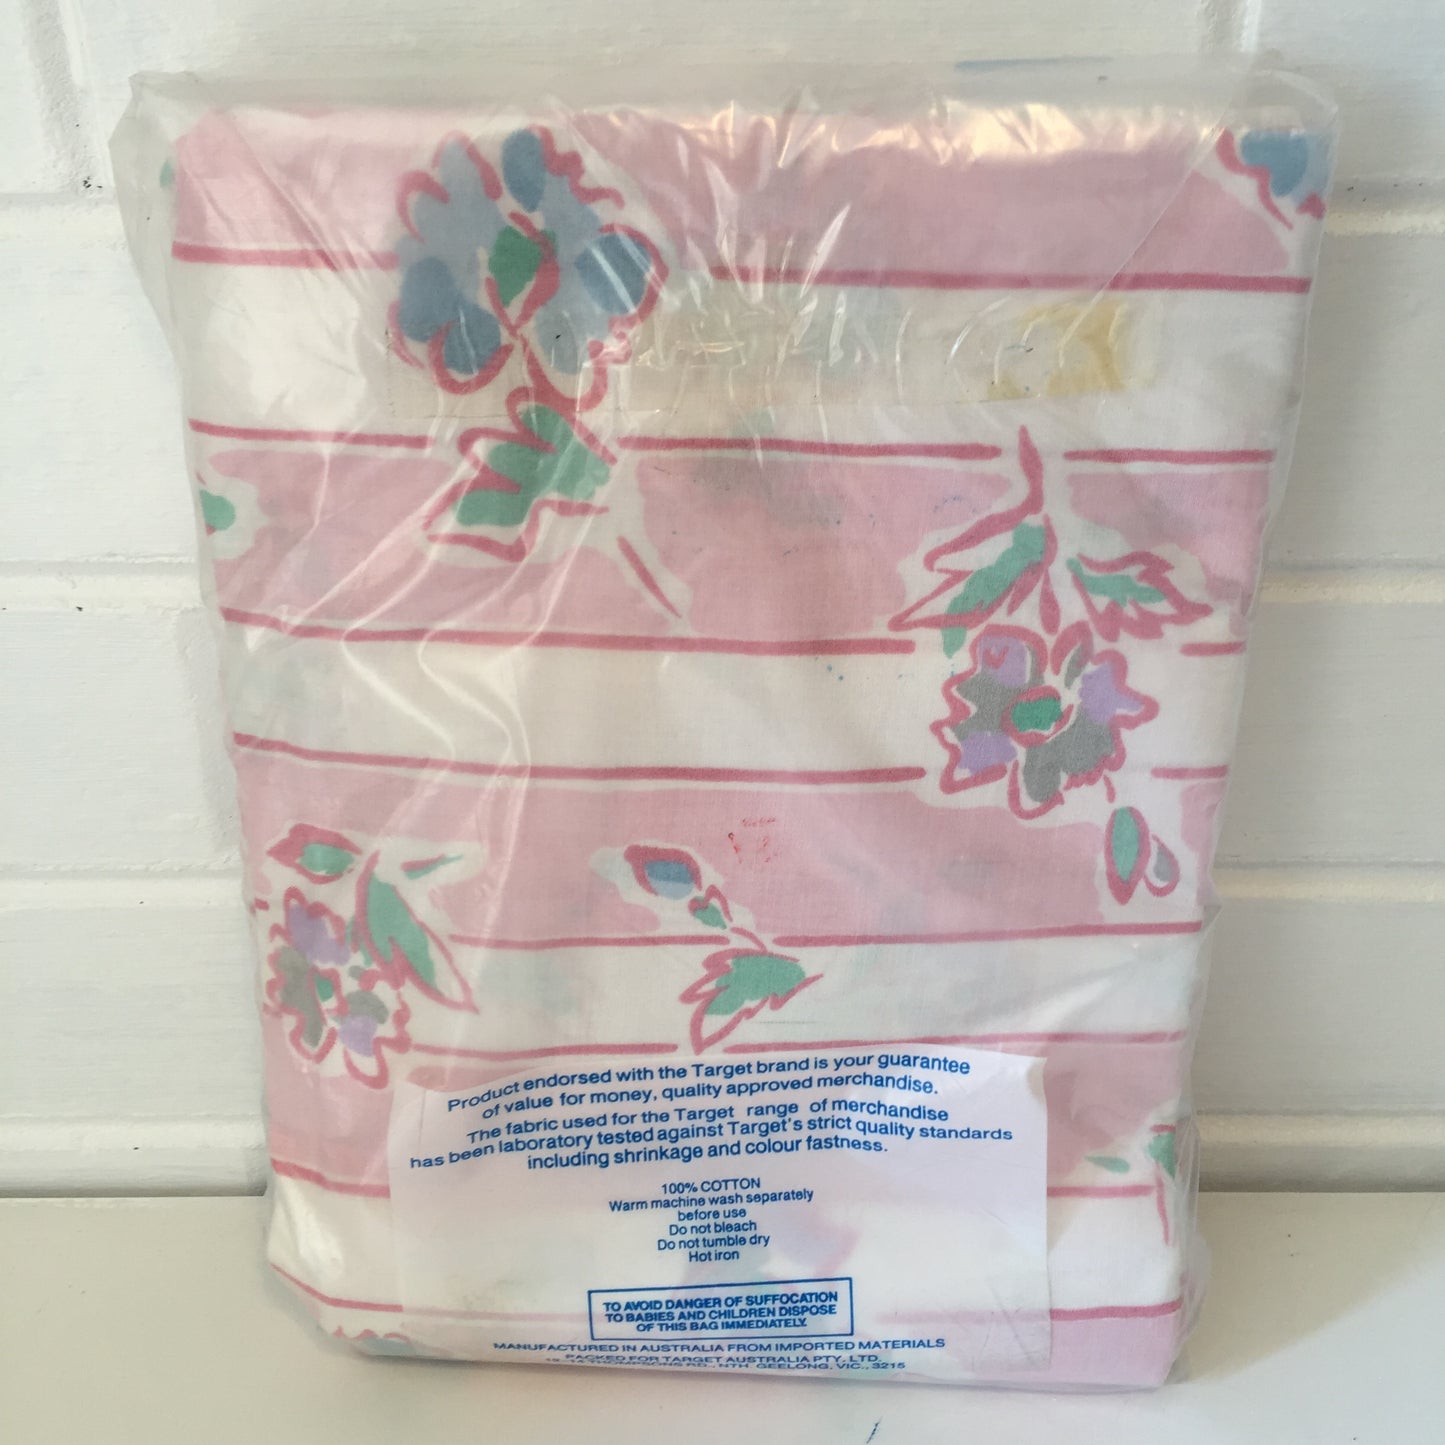 Vintage 100% Cotton Sheets Fabric Pillow Case